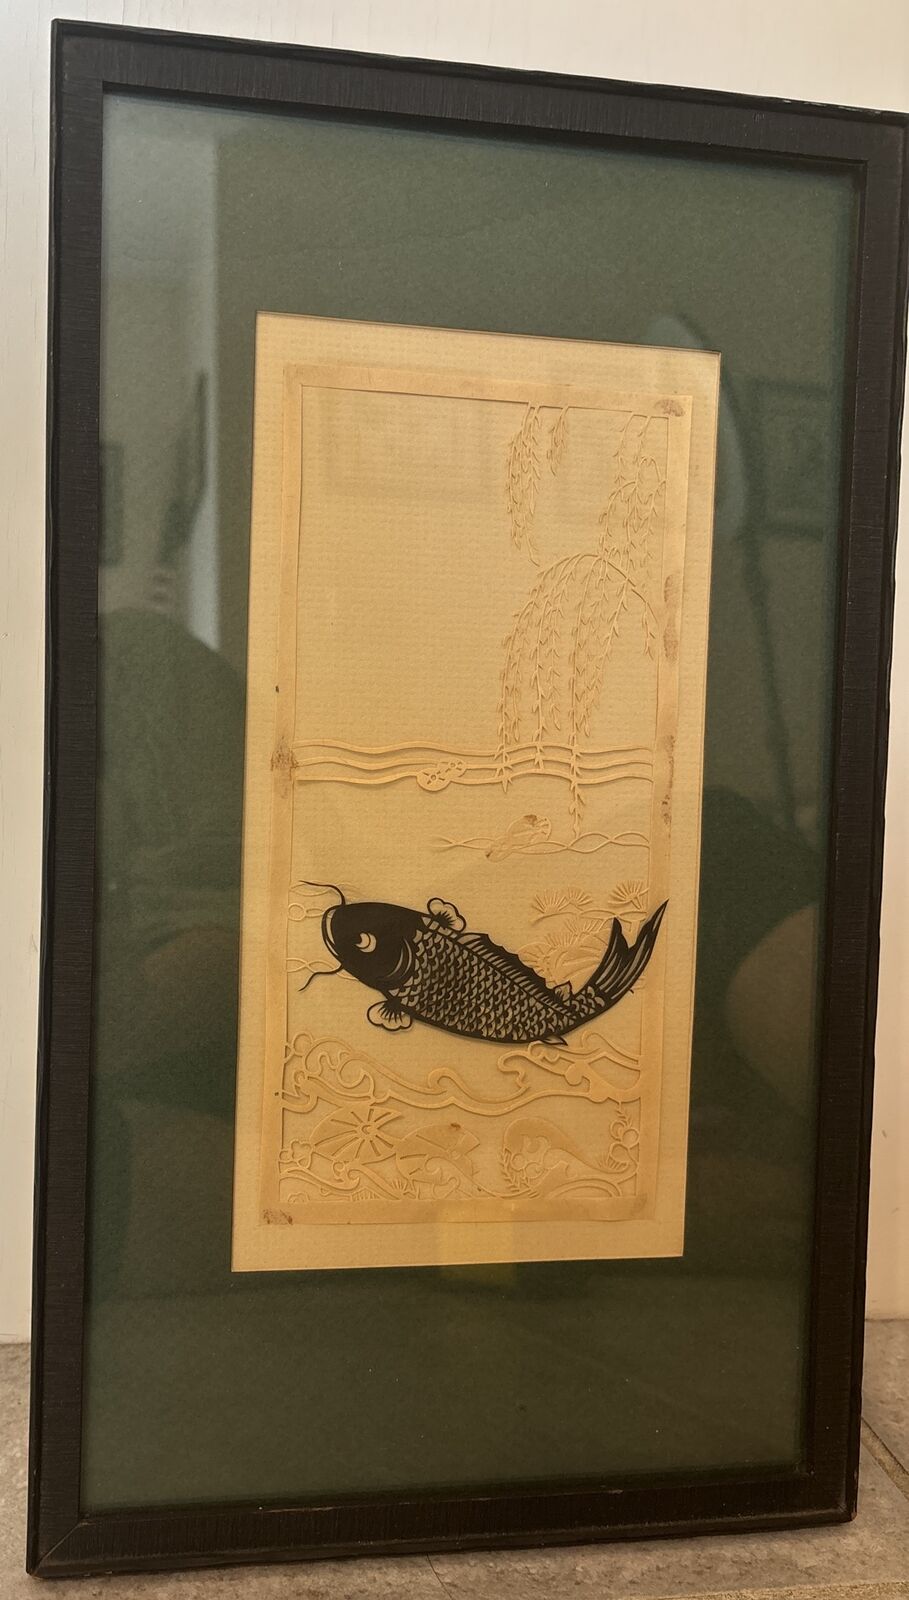 VTG Framed Matted Japanese Kirigami Art Koi Fish Water Scene 15” X 9” Pic-5”x9”